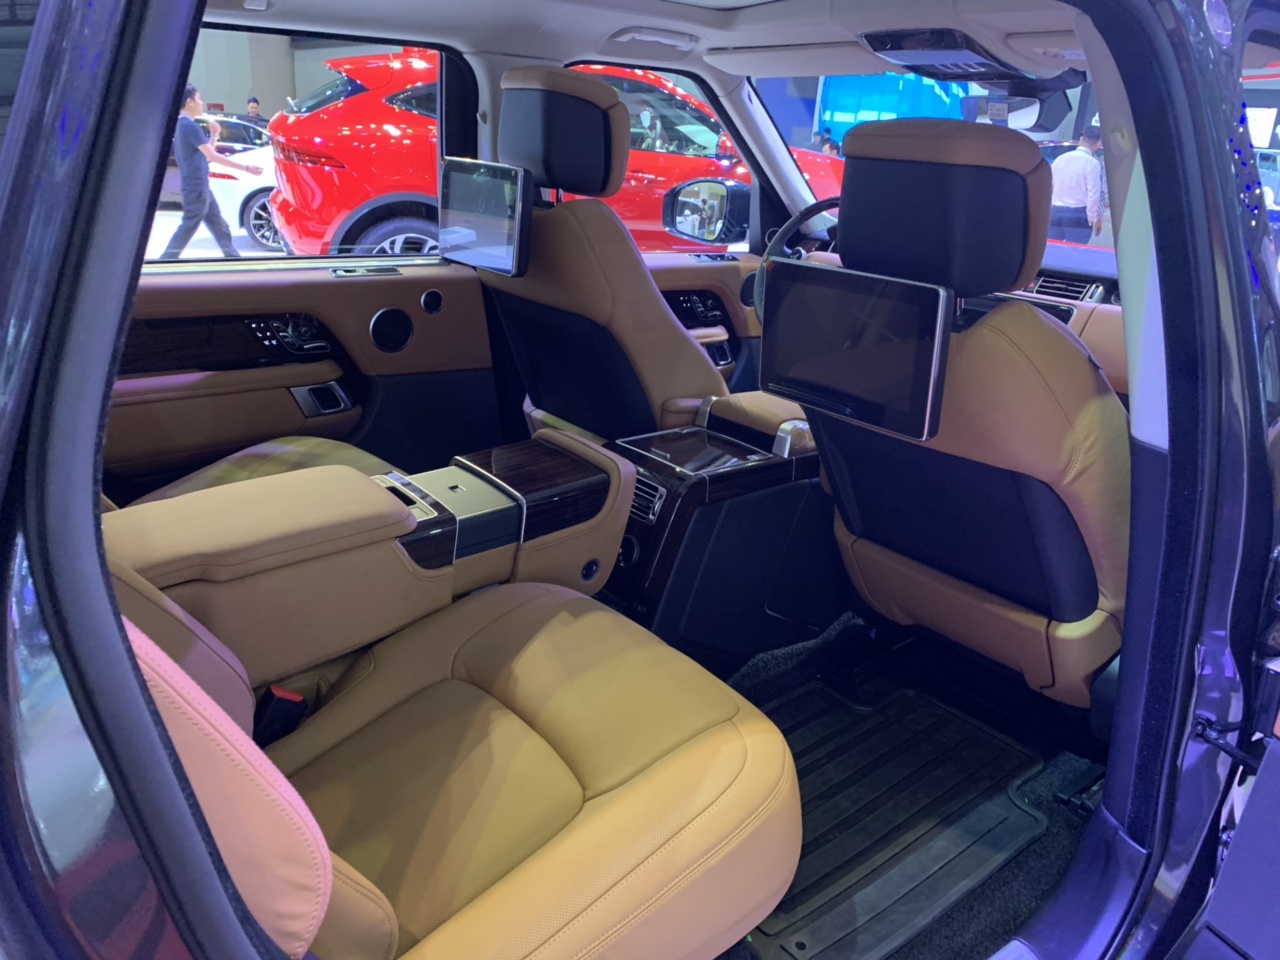 Range Rover Autobiography LWB Bản Dài Ra Mắt Tại Triễn Lãm Bao Nhiêu Tiền, Đời Bao Nhiêu 2019 hay 2020, Động Cơ Mấy Chấm, Bản Supercharged hay HSE, Mấy ghế ngồi, màu đen hay xám, giá rẻ nhất bao nhiêu, 